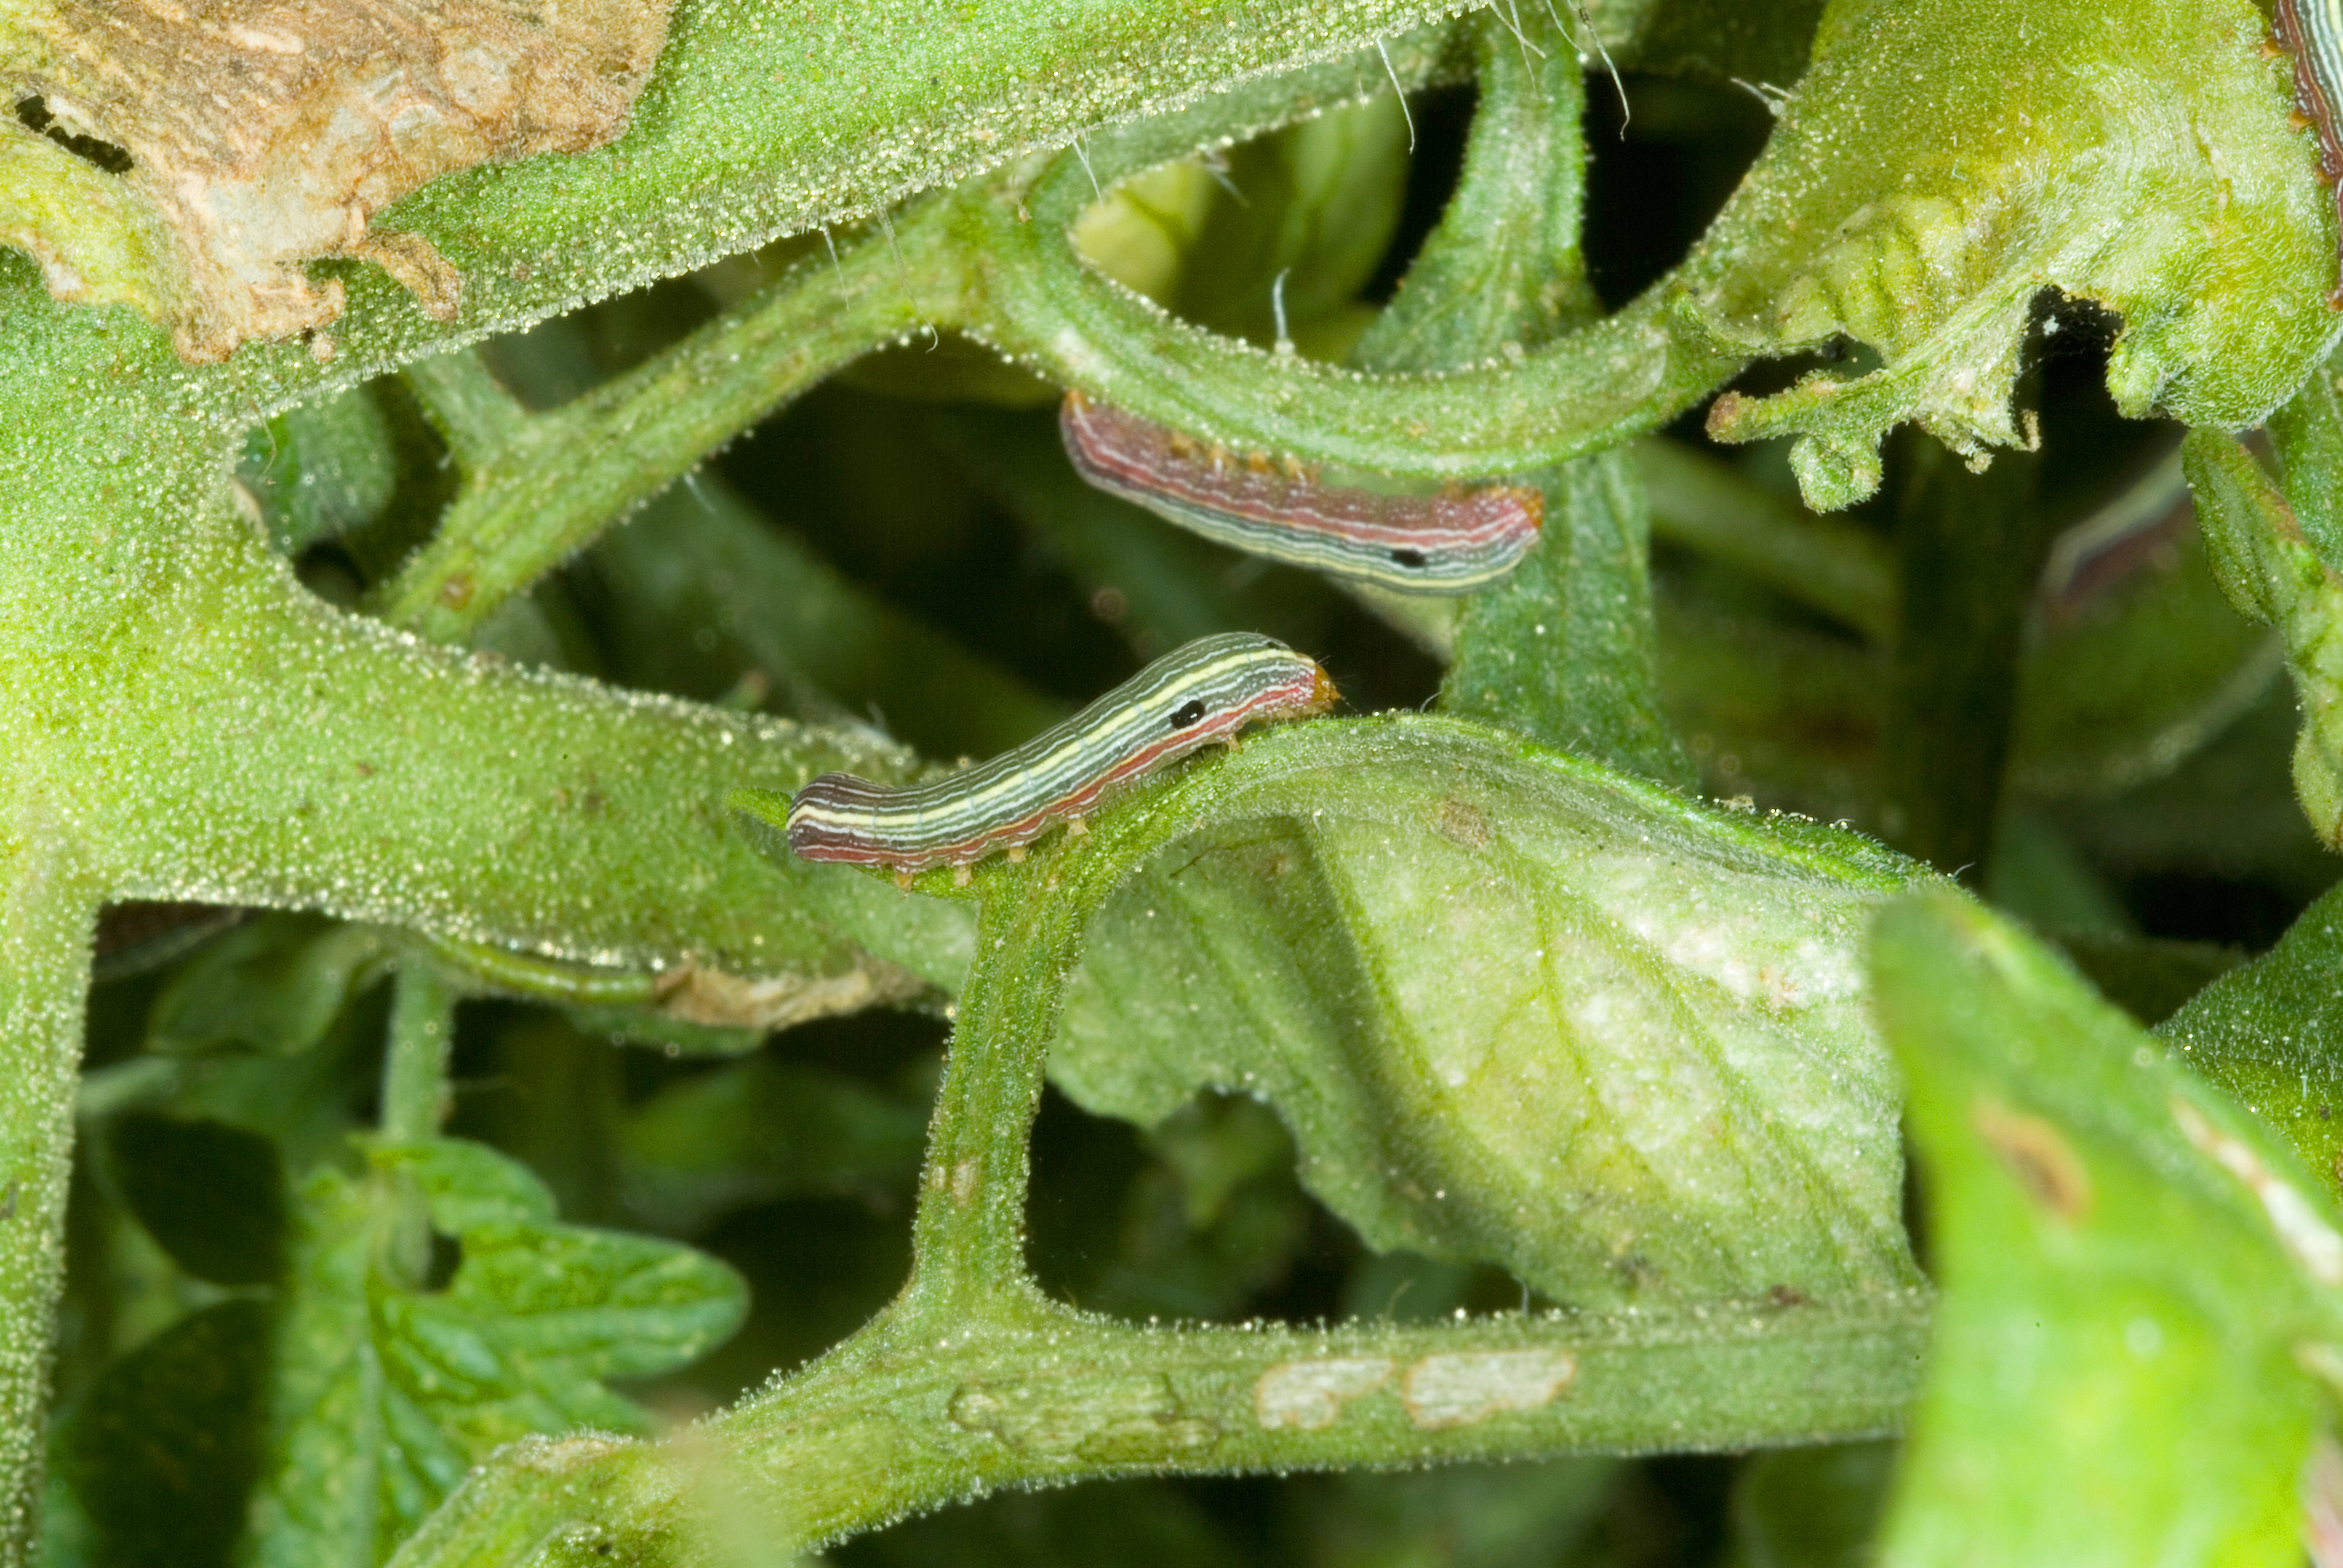 Yellow striped armyworm small larvae on tomato foliage.